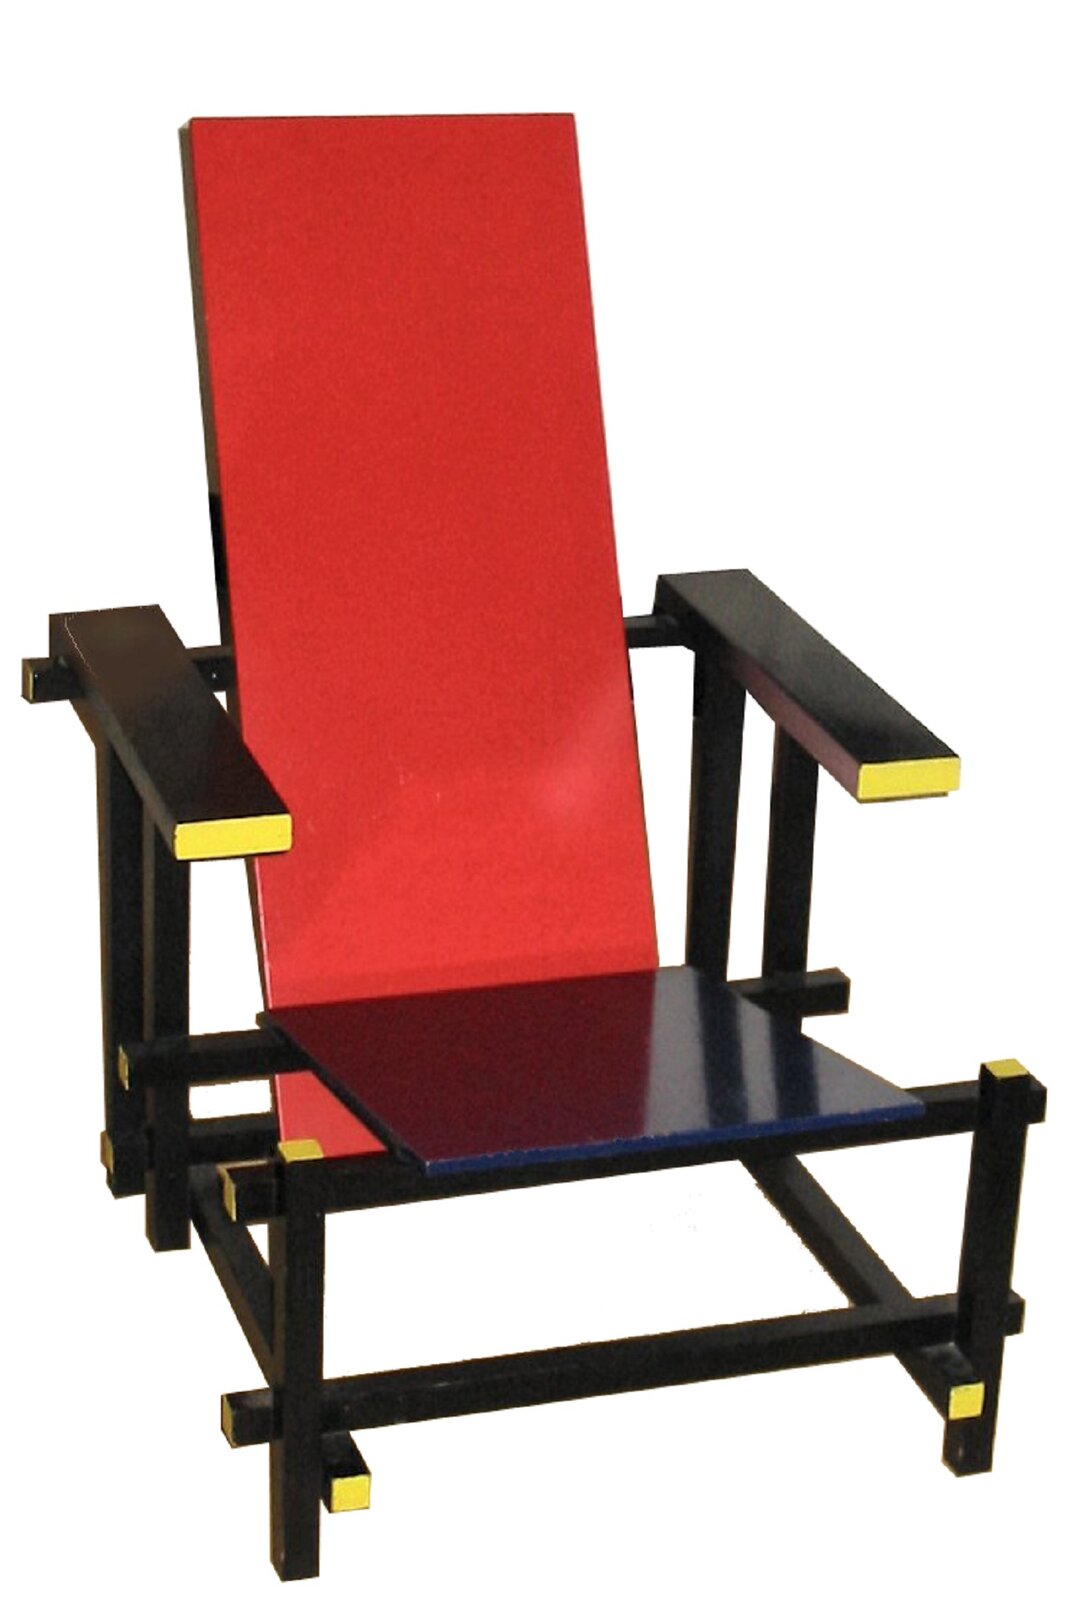 Fotografia przedstawia czerwono-niebieskie krzesło projektu Gerrita Rietvelda, stojące na czarnych nogach z żółtymi  elementami. Krzesło posiada czerwone drewniane oparcie oraz niebieskie drewniane siedzisko i czarno-zółte podłokietniki.